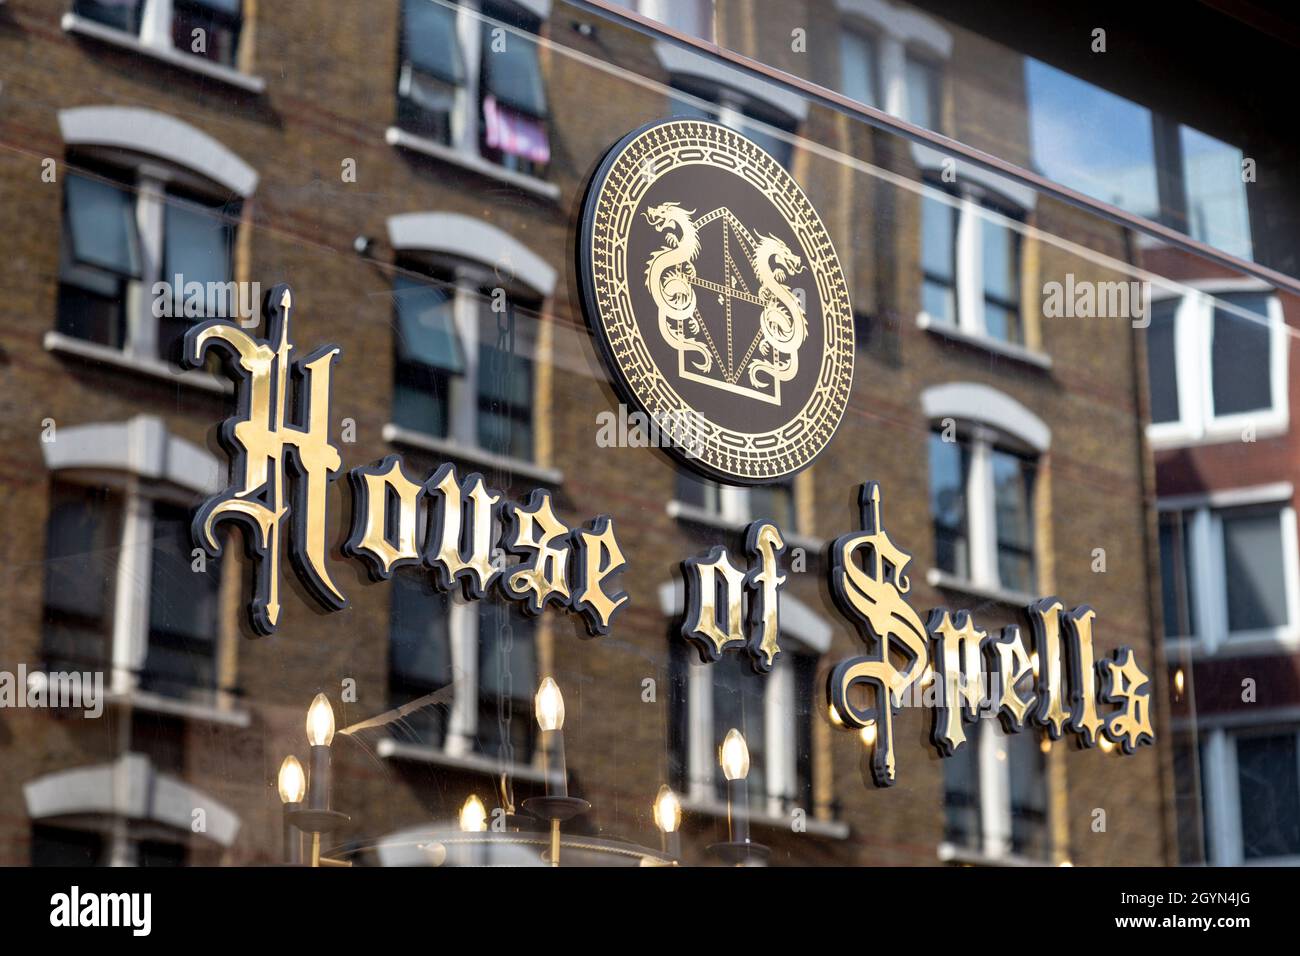 Harry Potter et magasin sur le thème de fantaisie House of Spells, Charing Cross Road, Londres, Royaume-Uni Banque D'Images